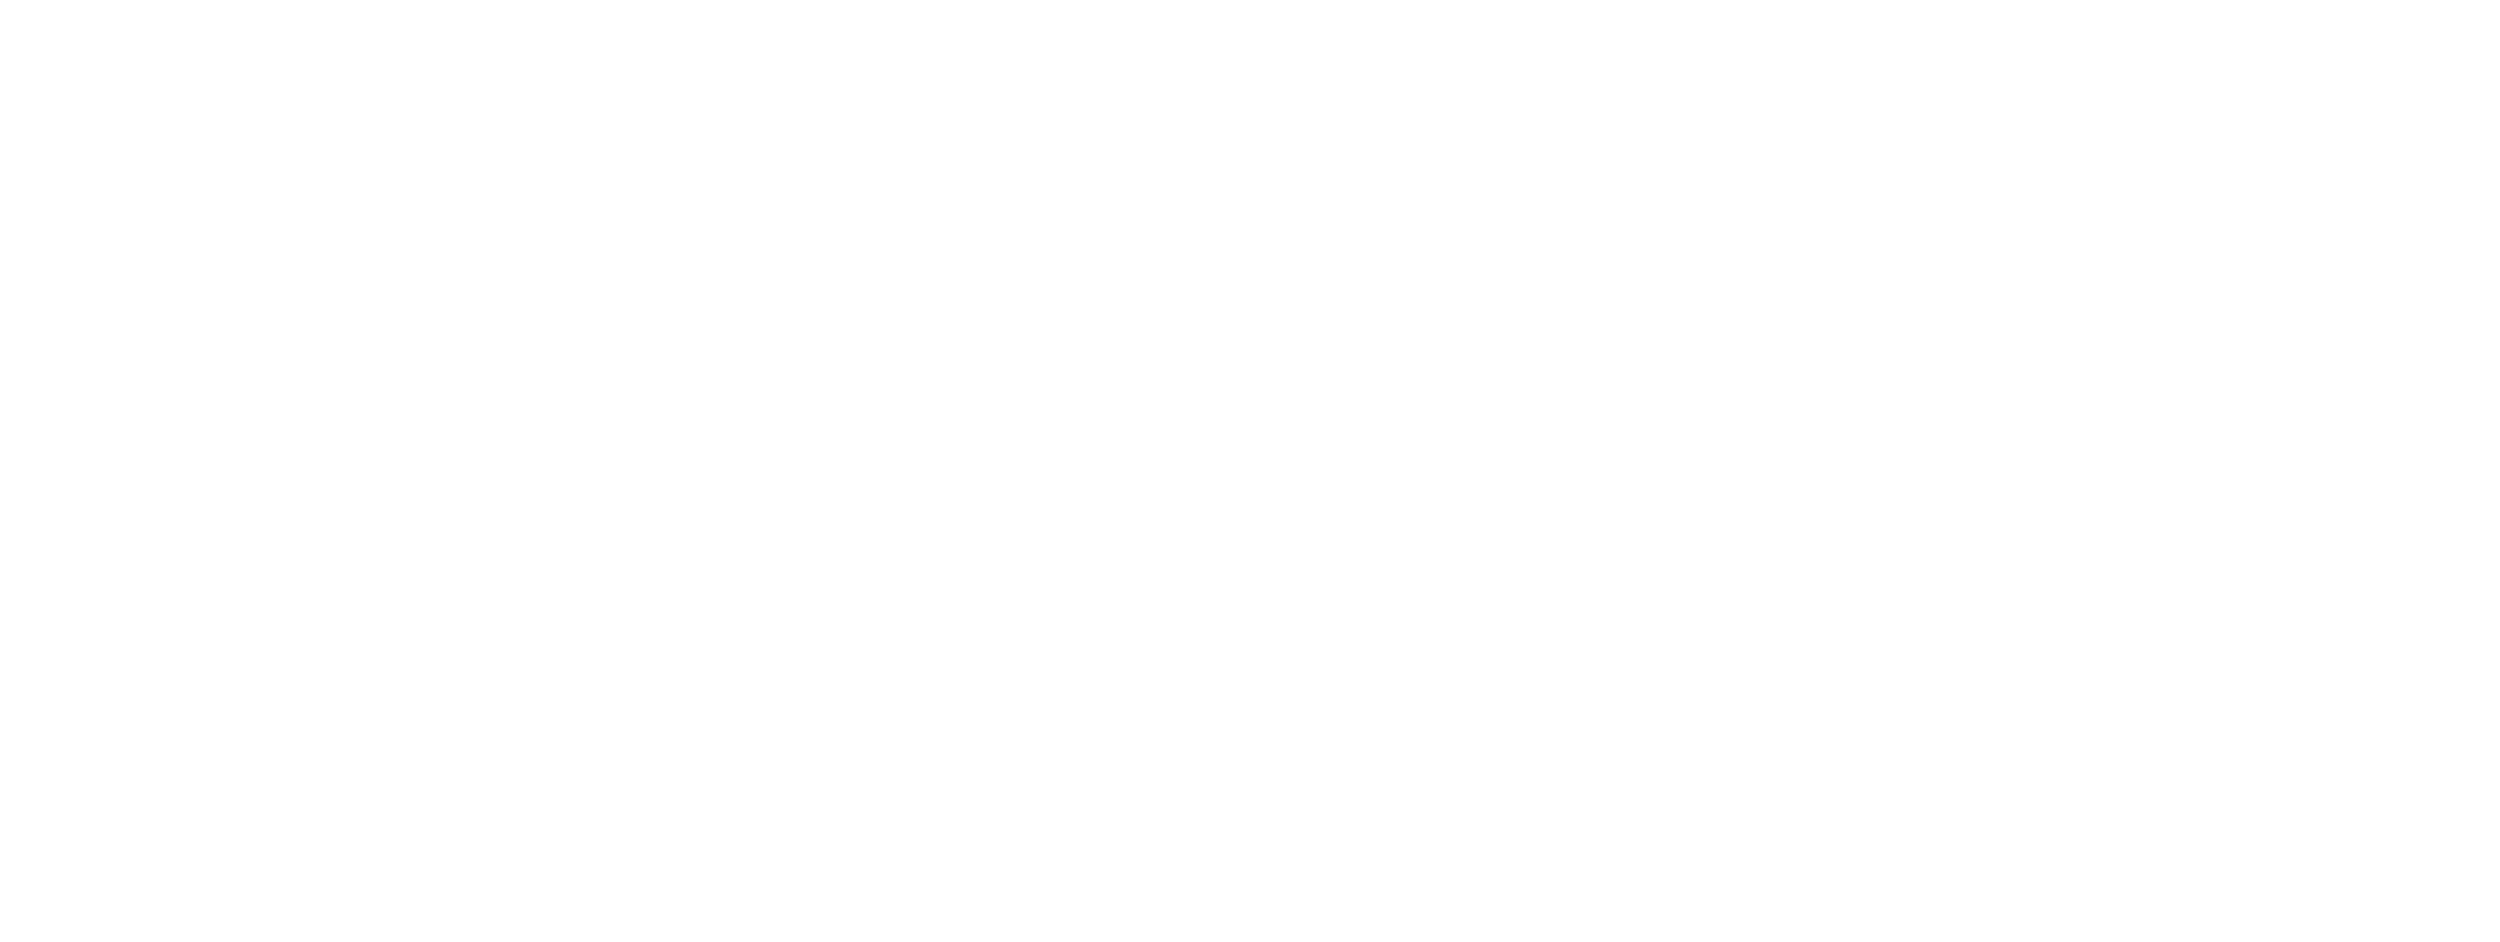 Michael's OaK Grill 